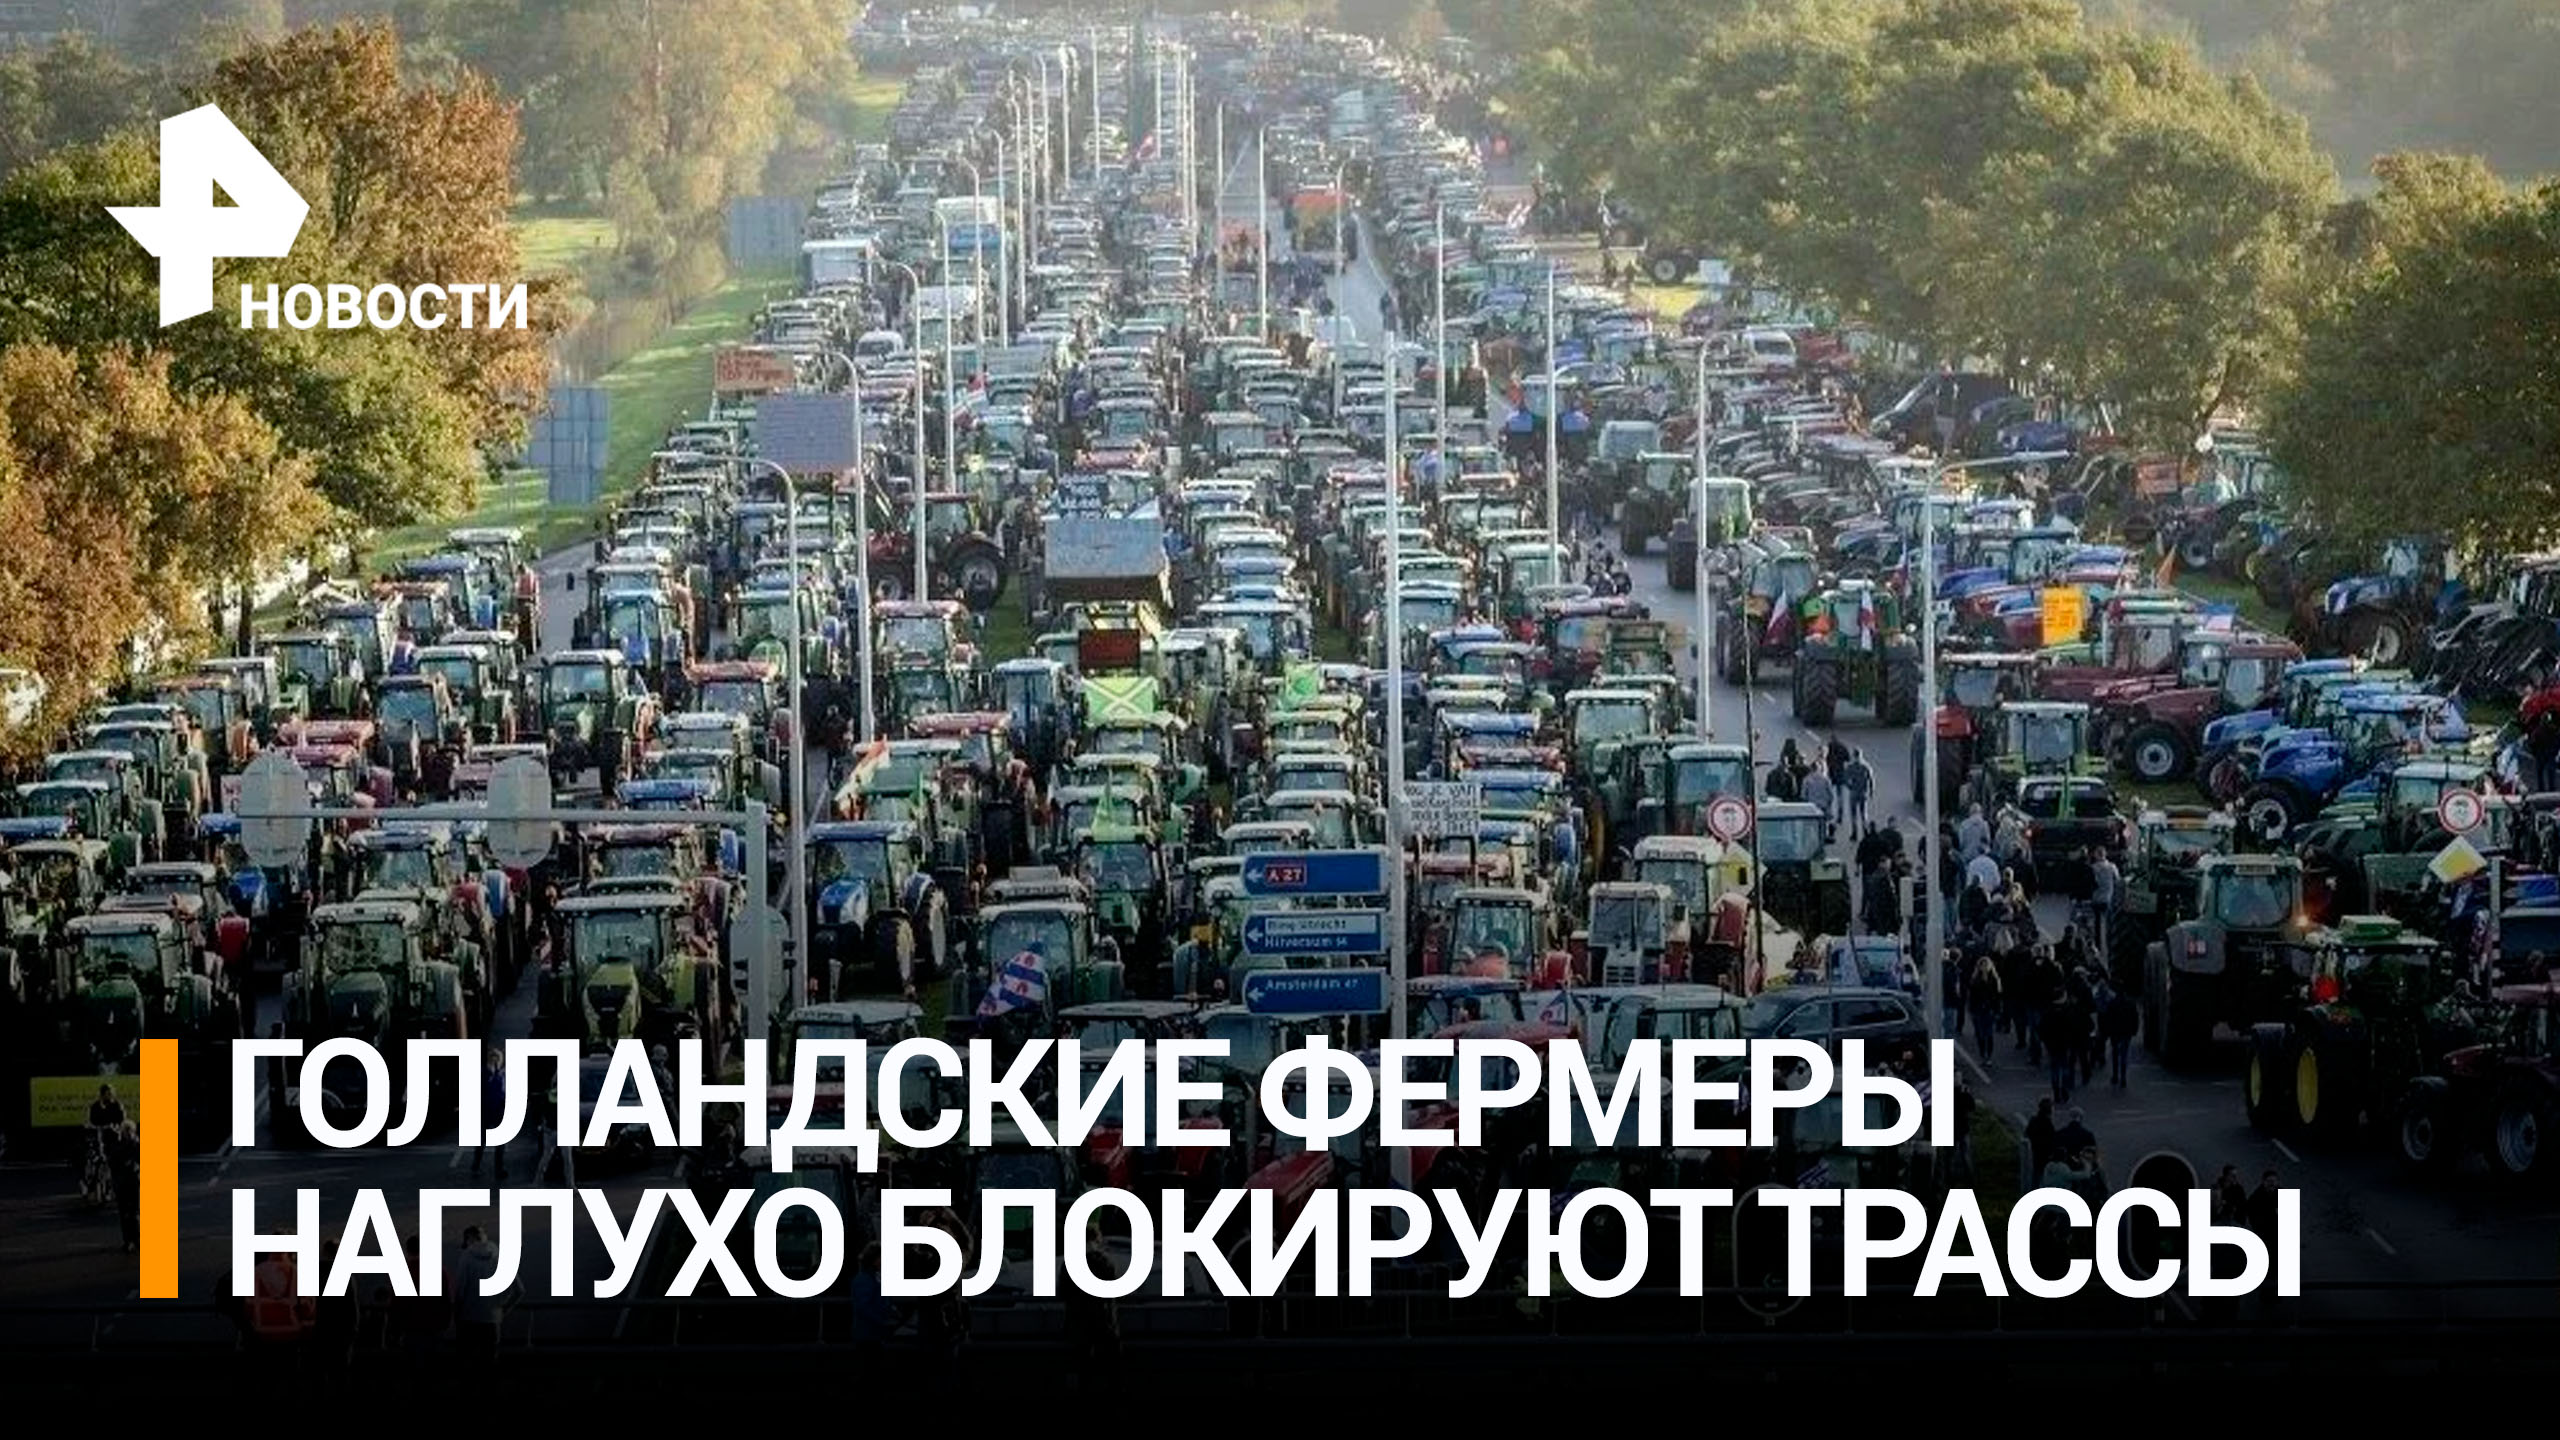 Фермеры заблокировали дороги в Нидерландах / РЕН Новости